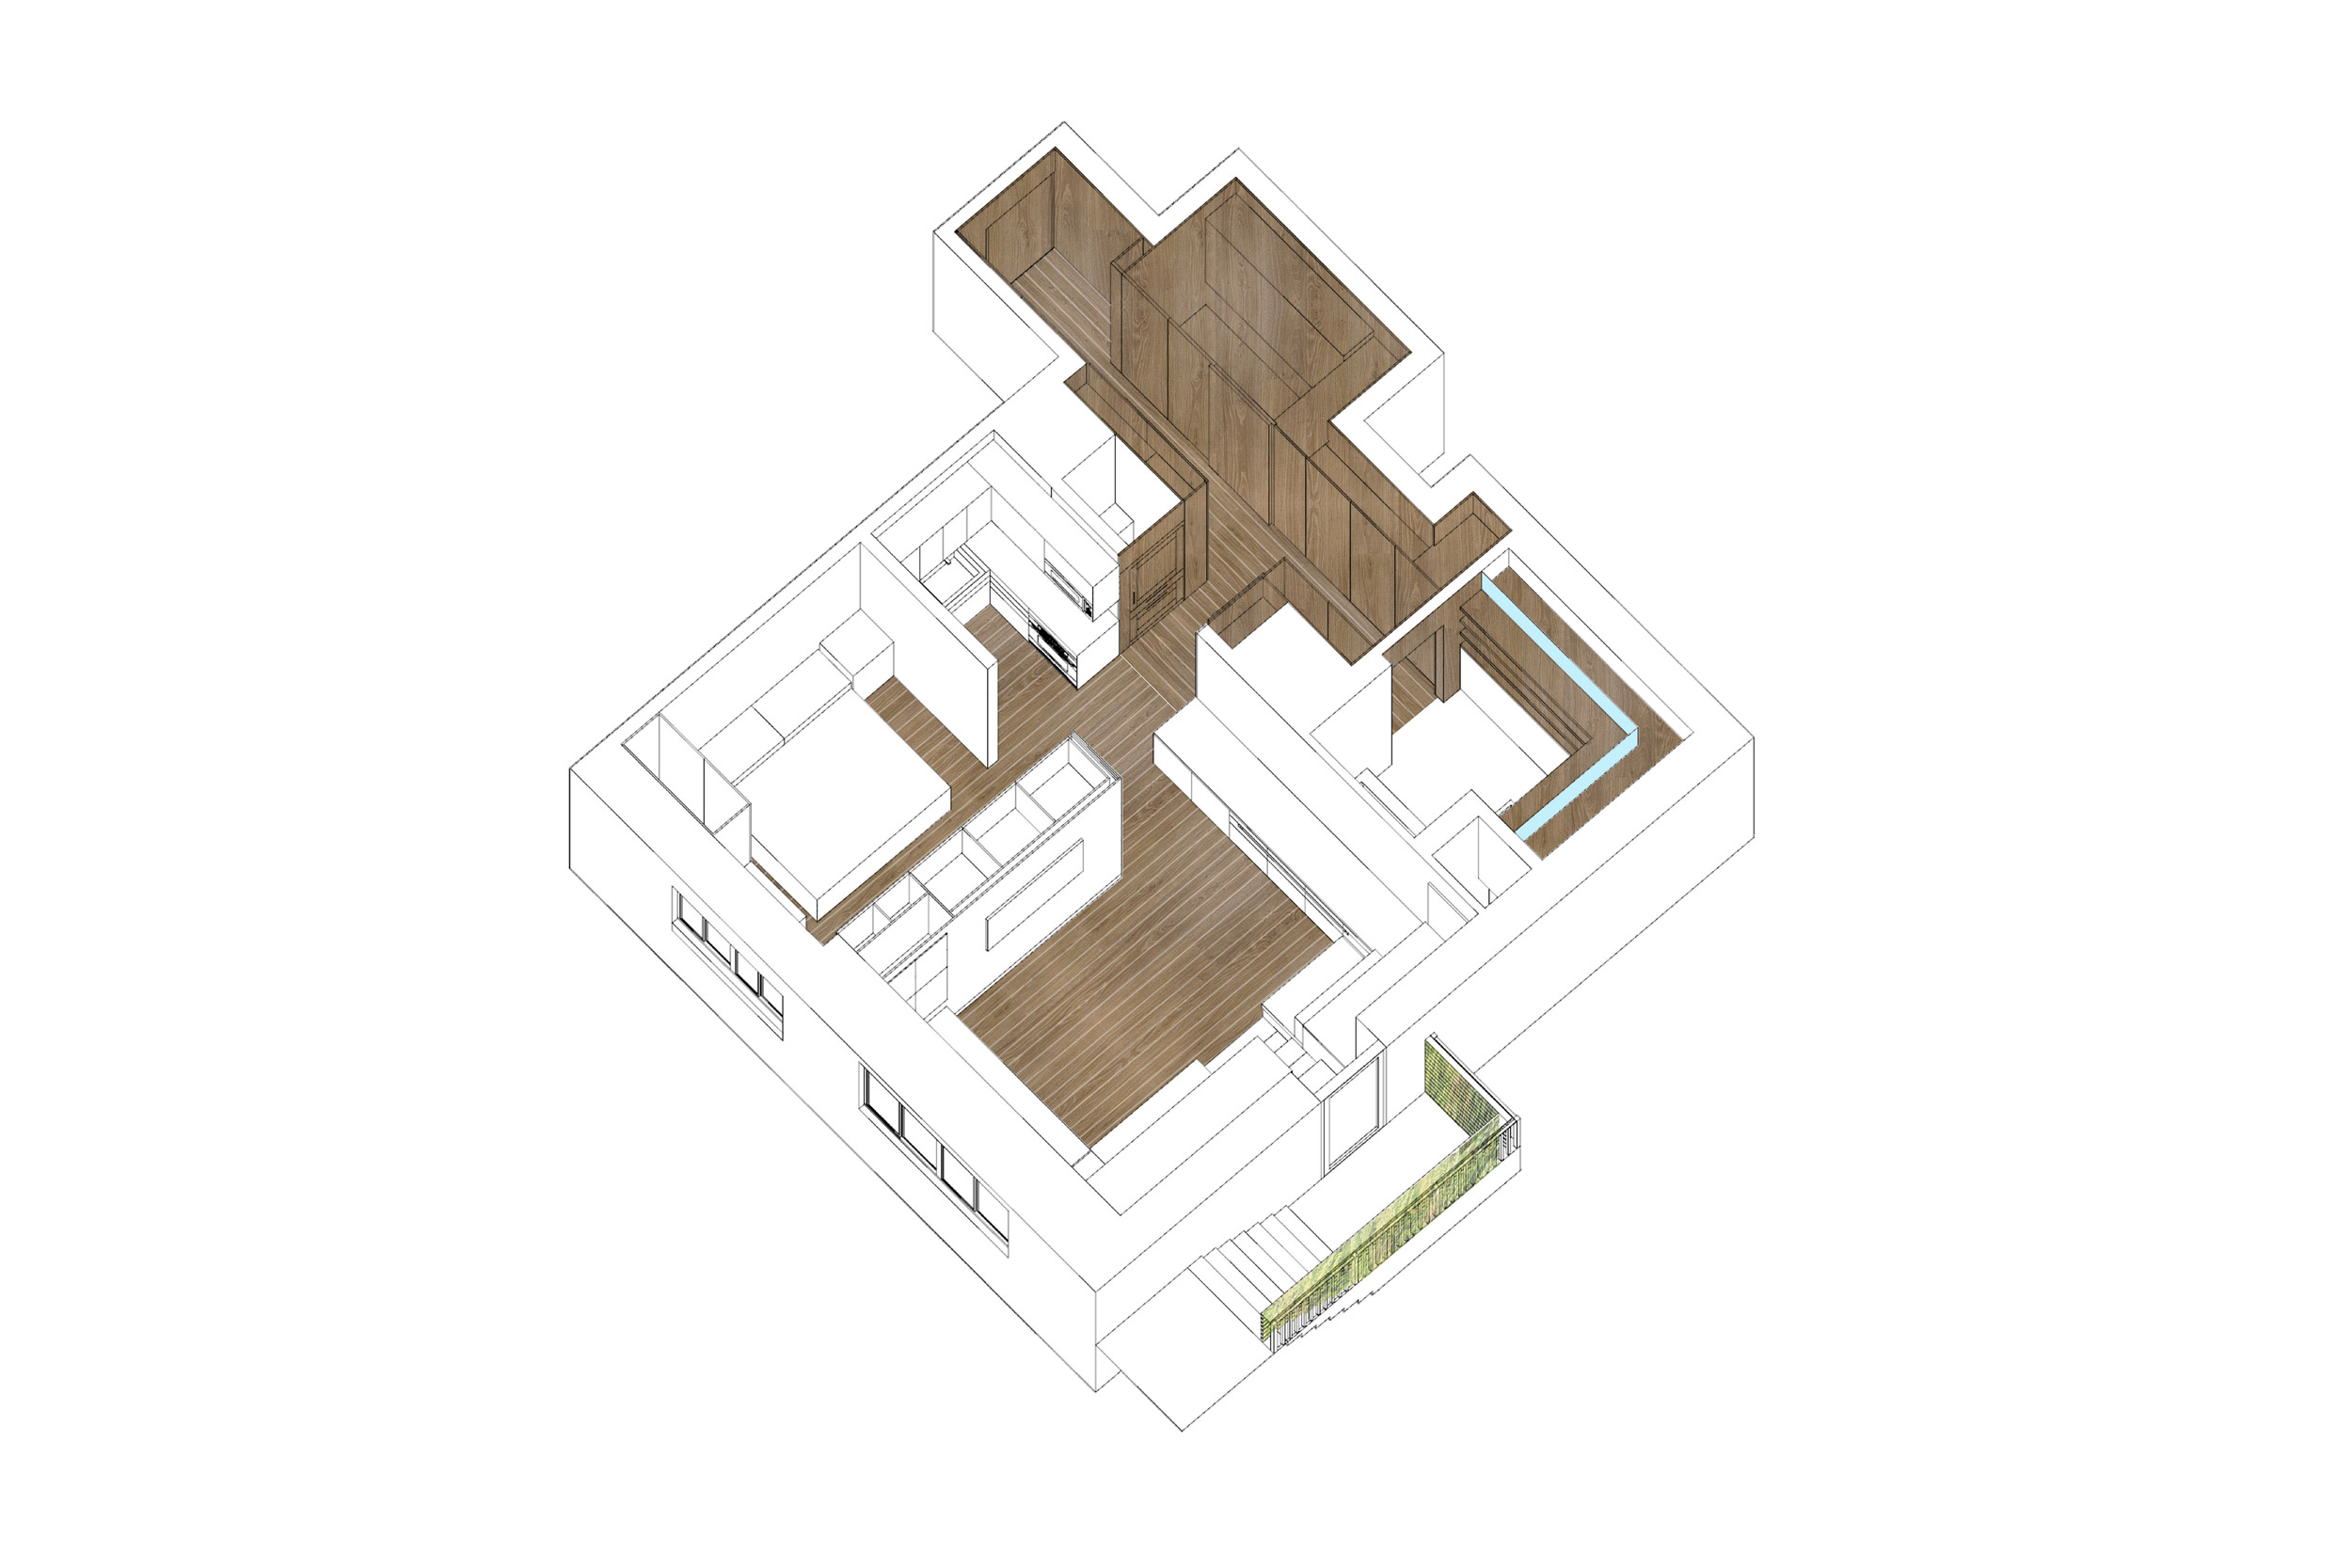 Interiors Merit Award: Hopp Apartment by Martin Hopp Architect, in New York, NY.